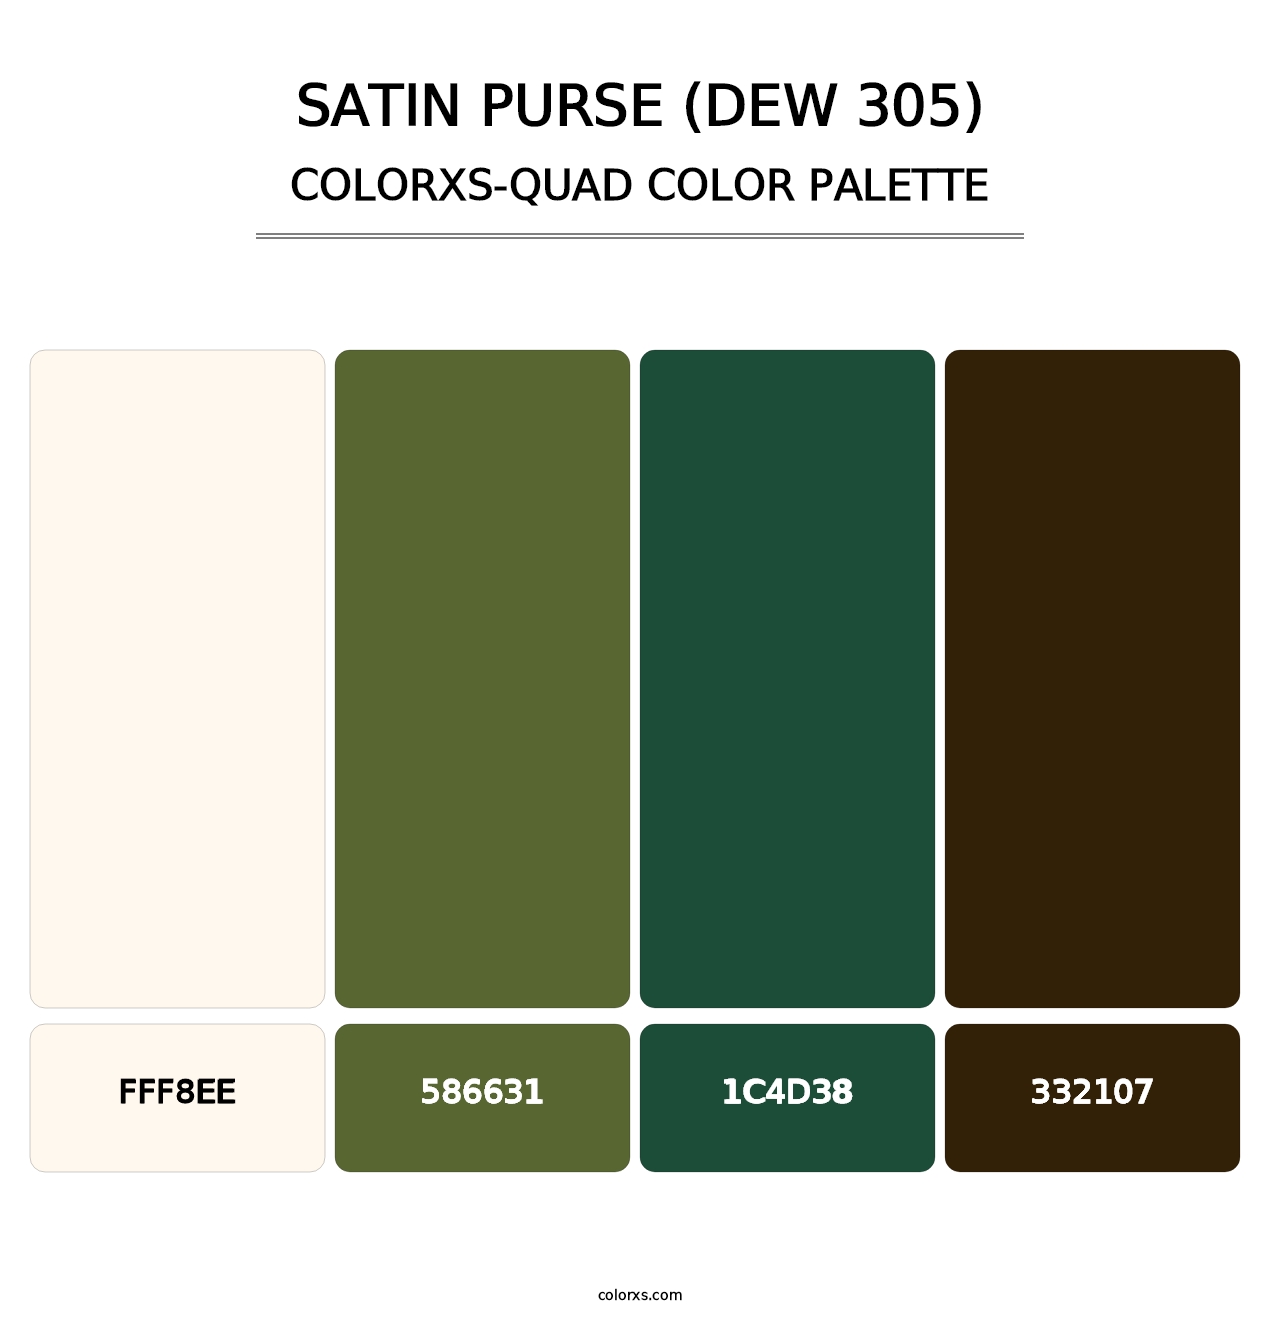 Satin Purse (DEW 305) - Colorxs Quad Palette